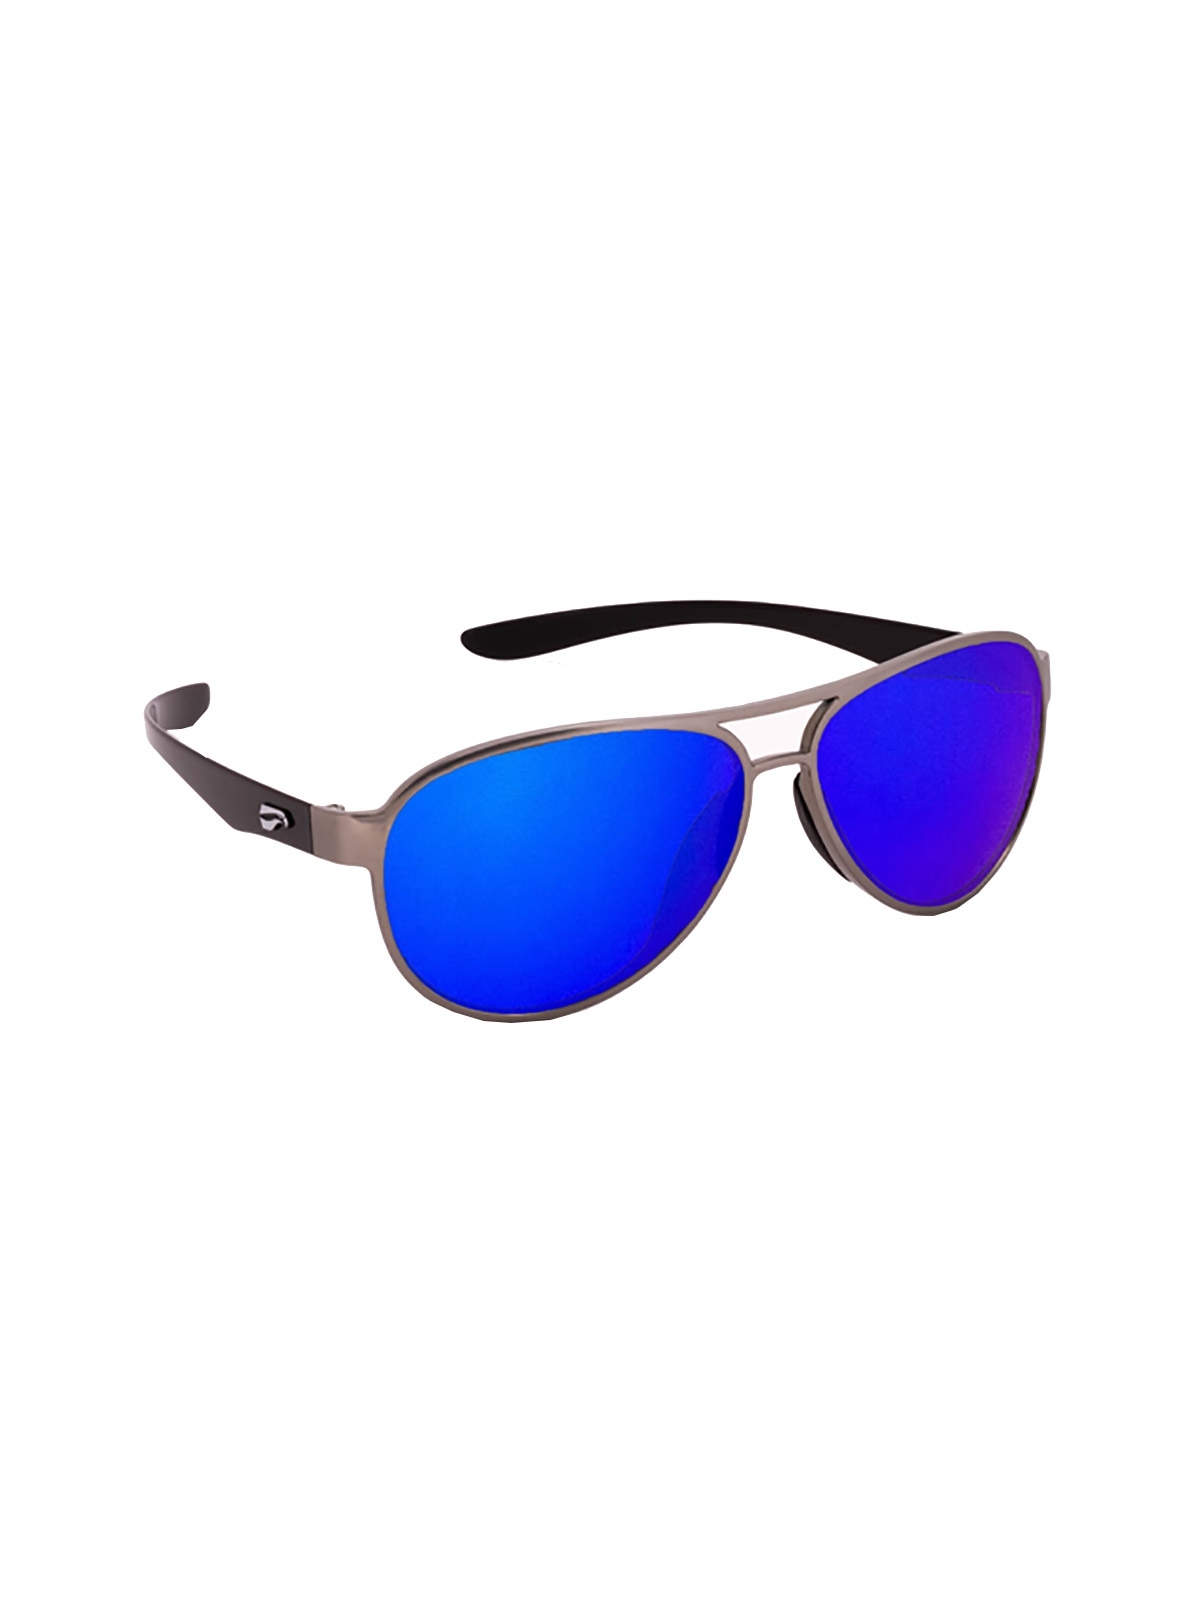 Flying Eyes Sunglasses Kestrel Aviator - Silver Front Frame, Mirrored Sapphire Lenses